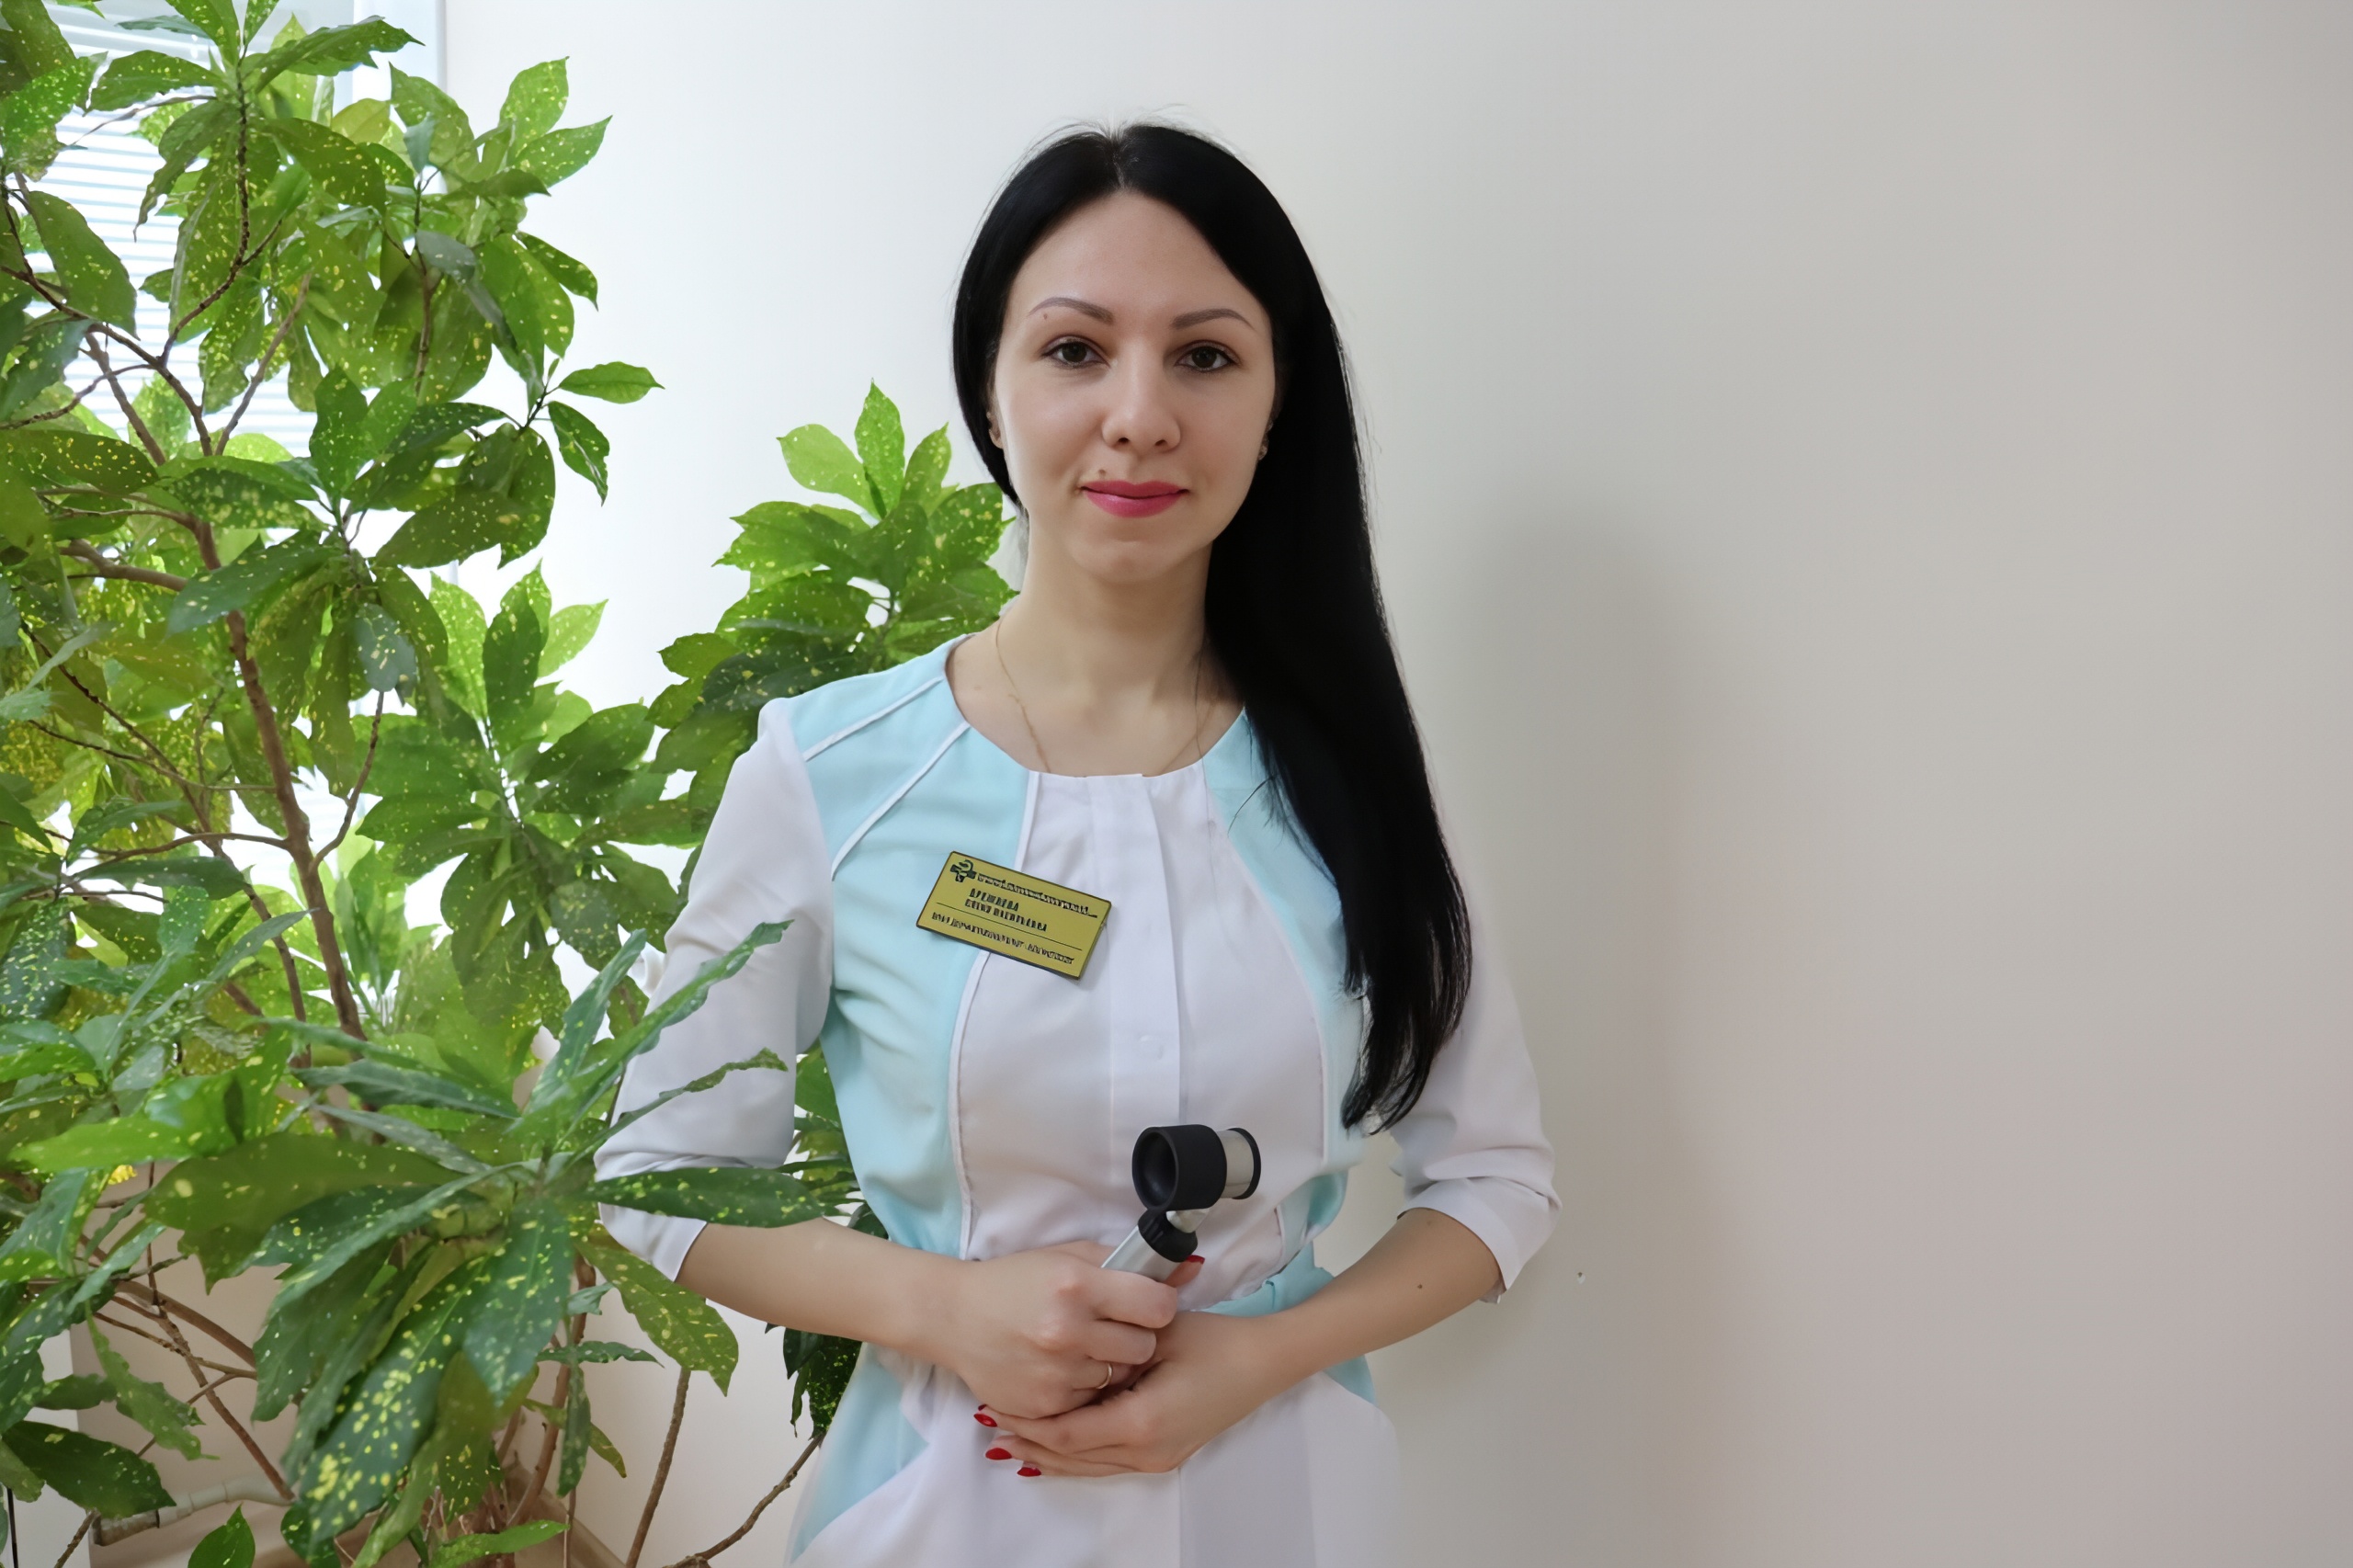  Врач-косметолог Елена Брежнева: как уберечься от солнечных ожогов 